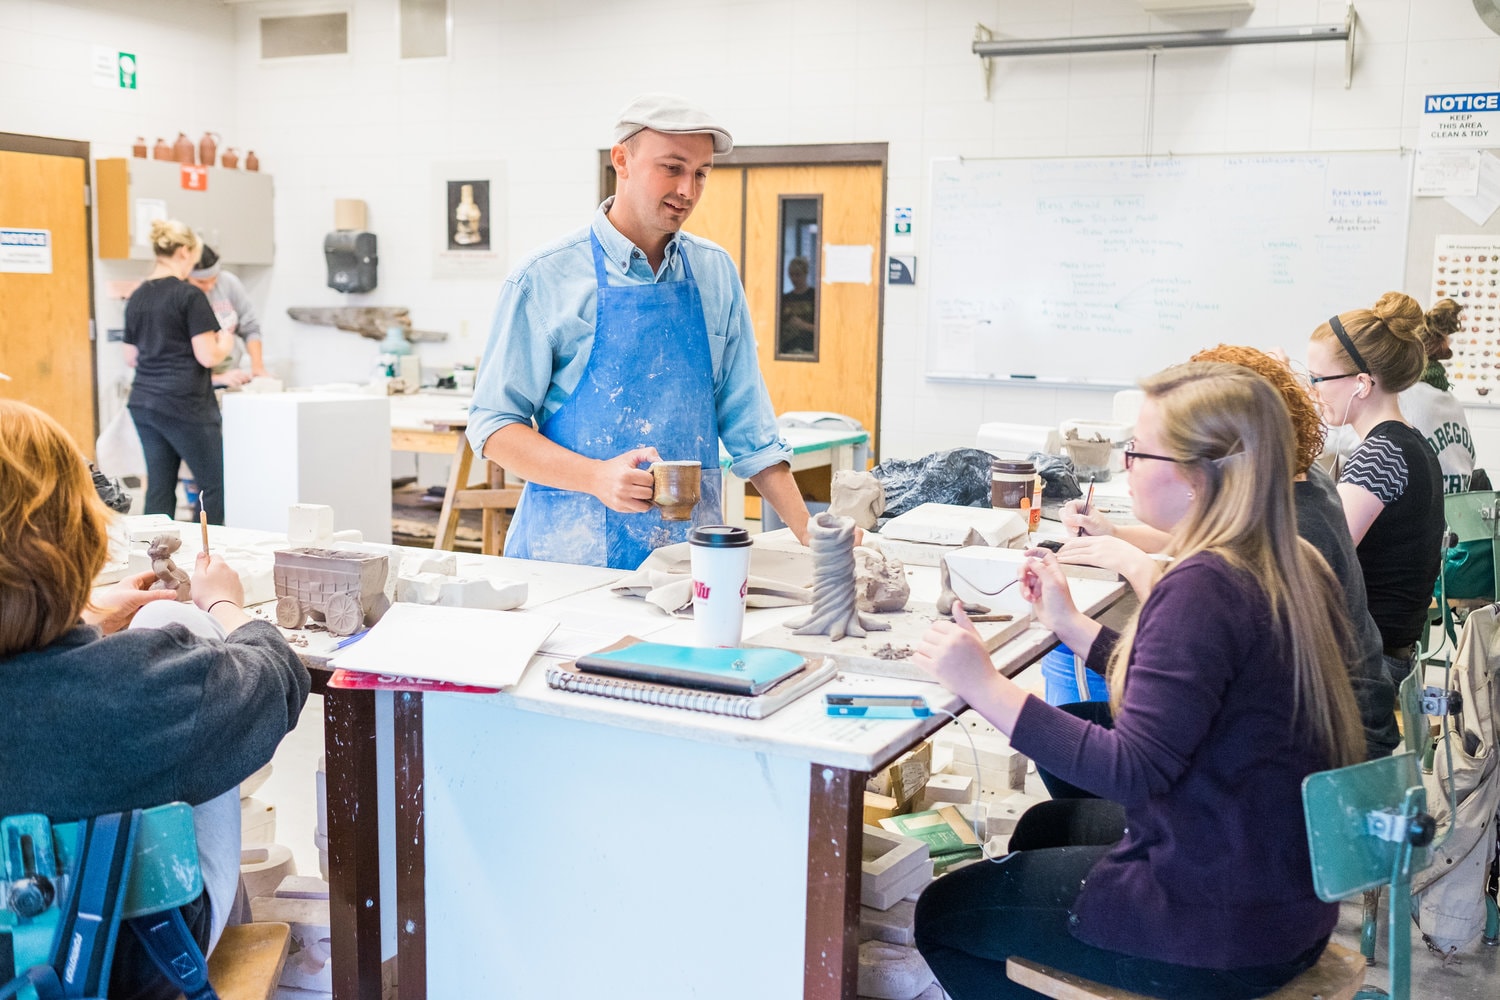 Professor helps students in ceramics class